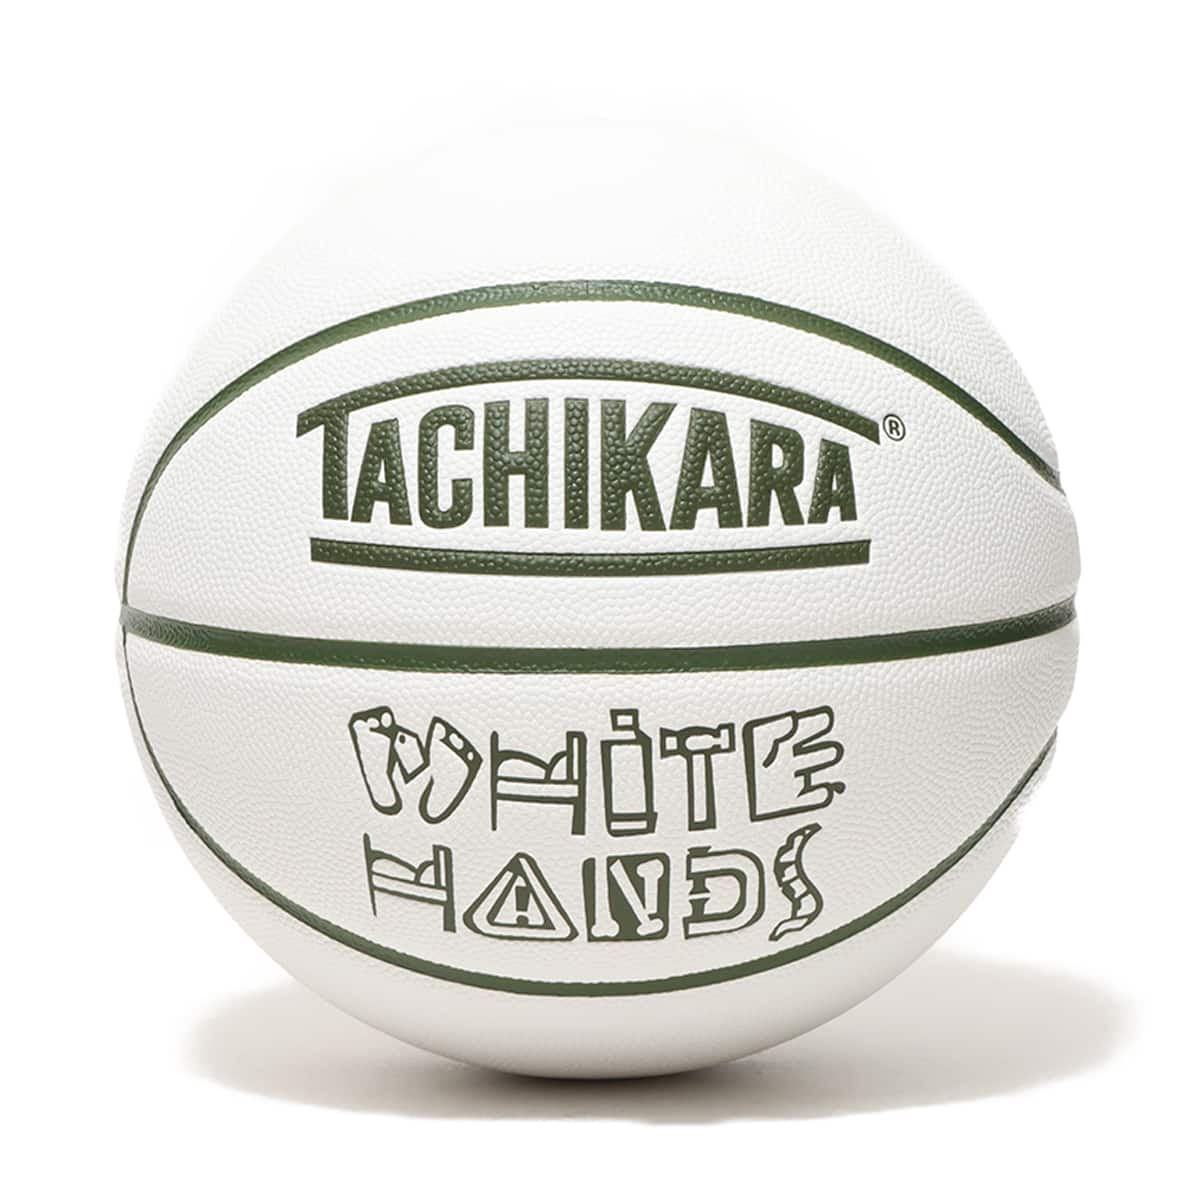 TACHIKARA WHITE HANDS WHITE 23FA-I